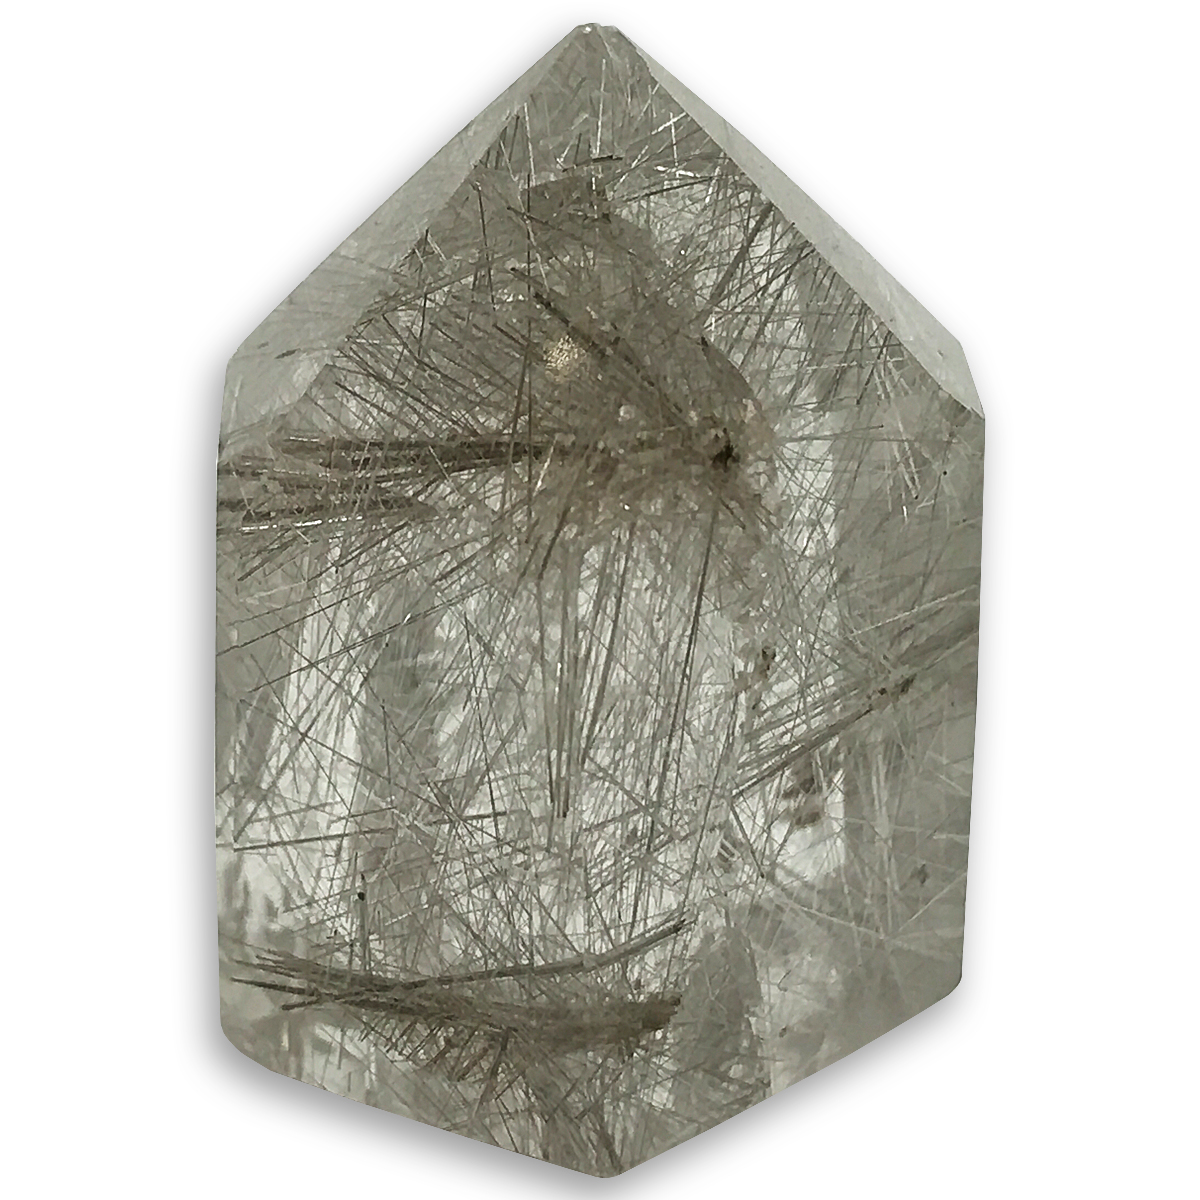  `NH[c(Rutile quartz)